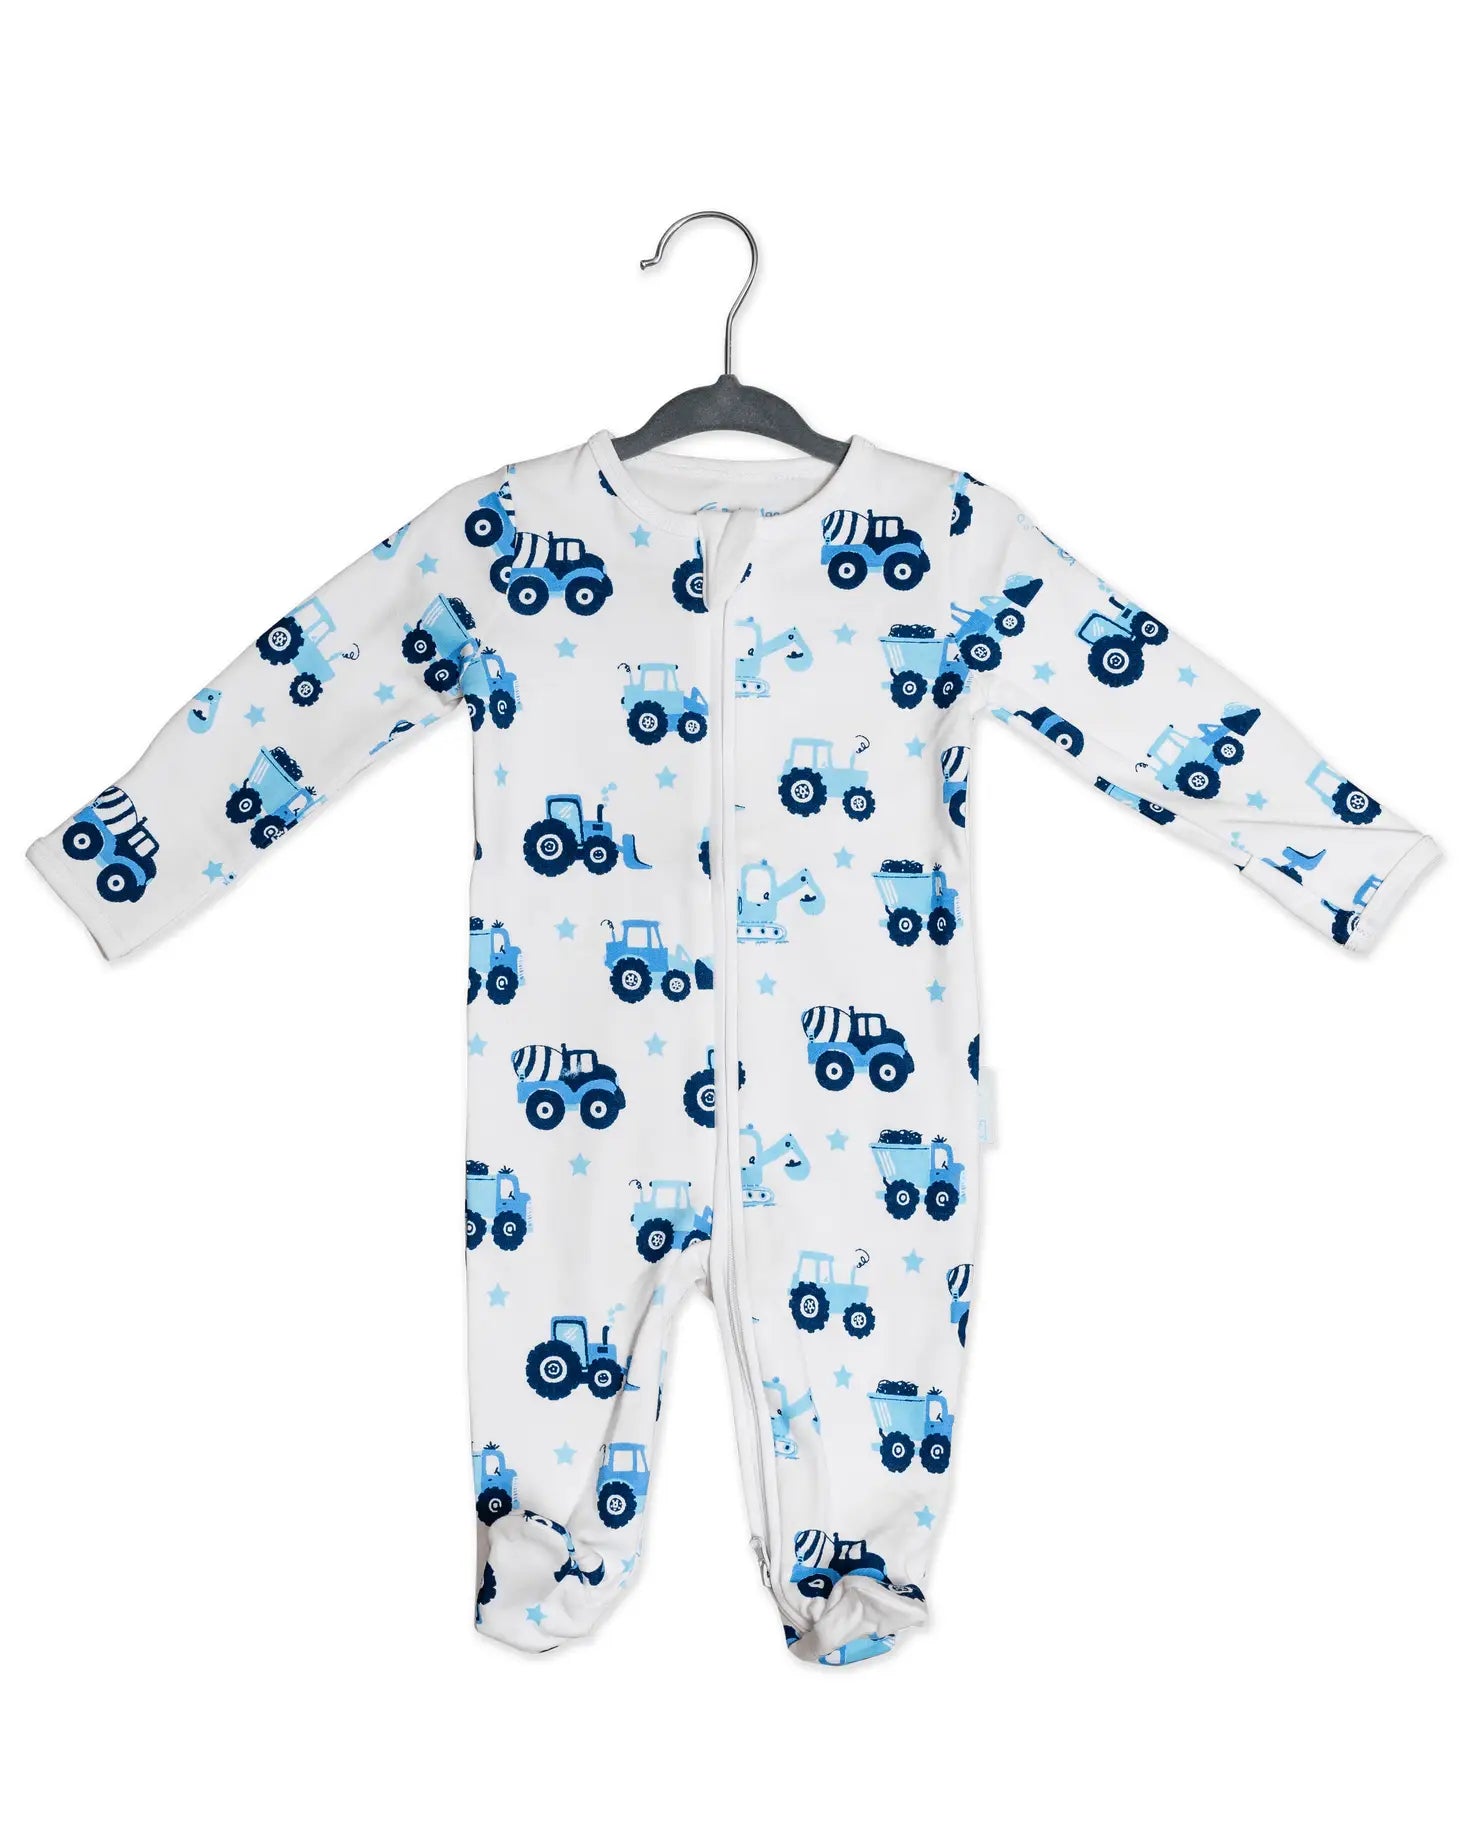 BabyMac Organic Cotton Sleepsuit Vehicle Print Zip up